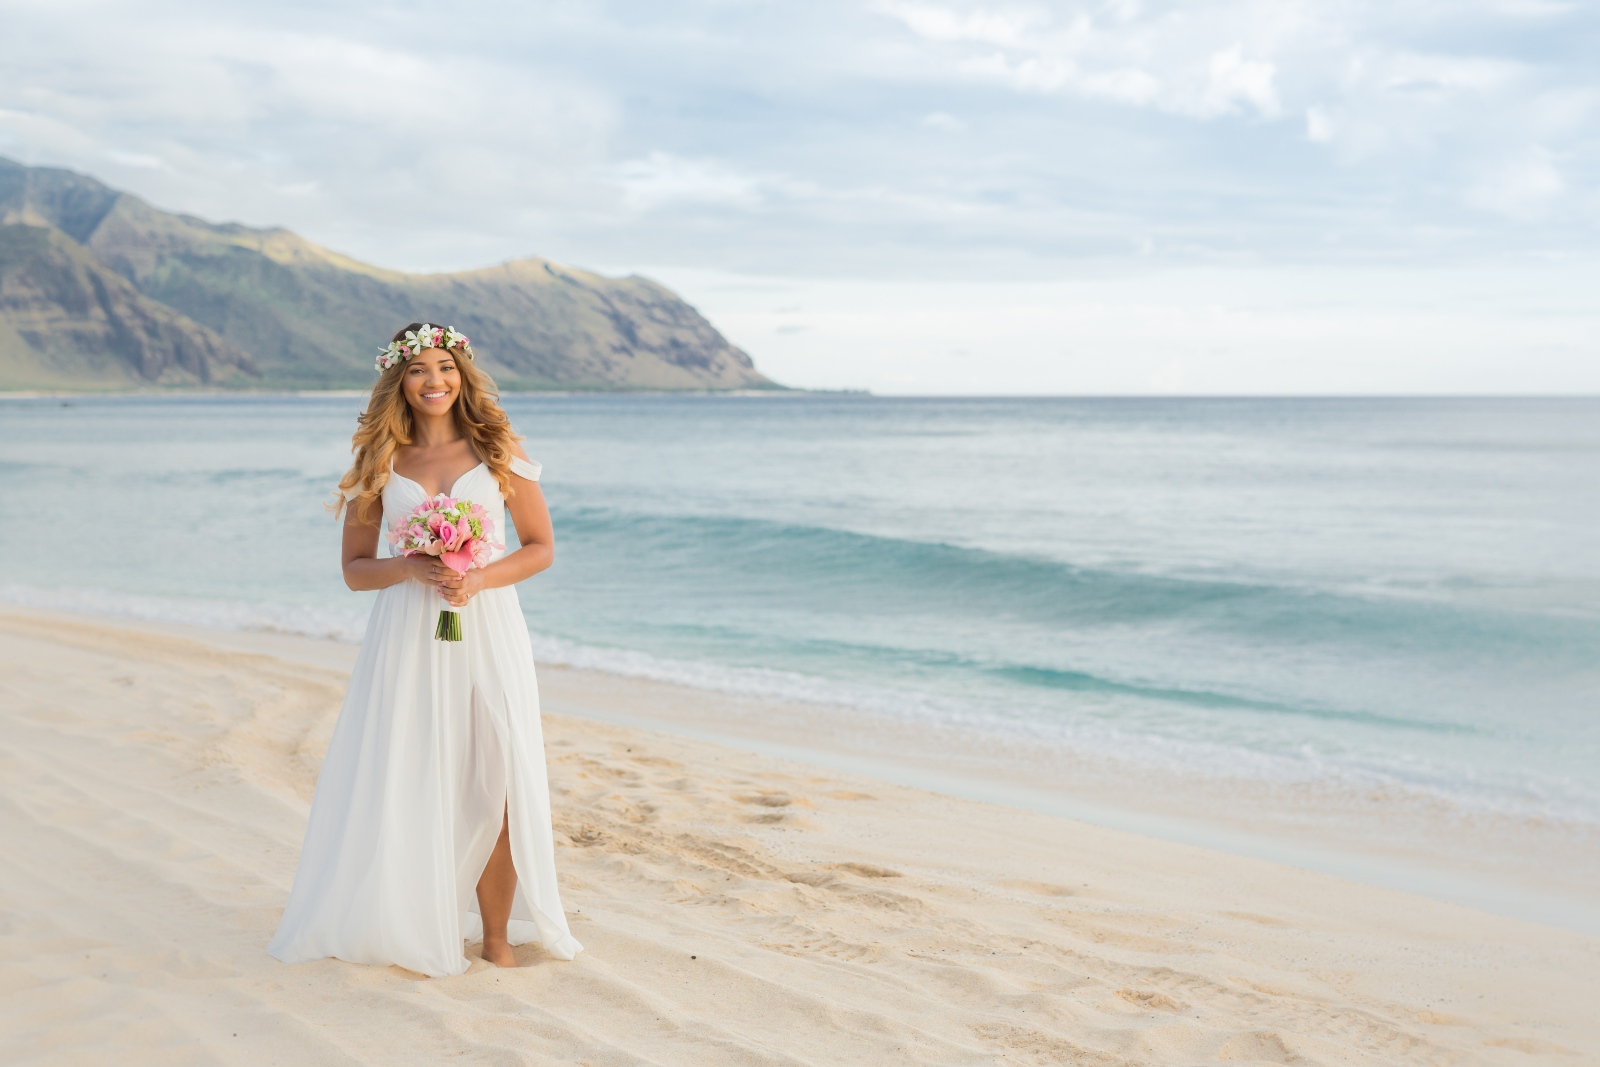 https://destinationweddingdetails.com/wp-content/uploads/beach-wedding-attire-tips-for-brides-featured.jpg